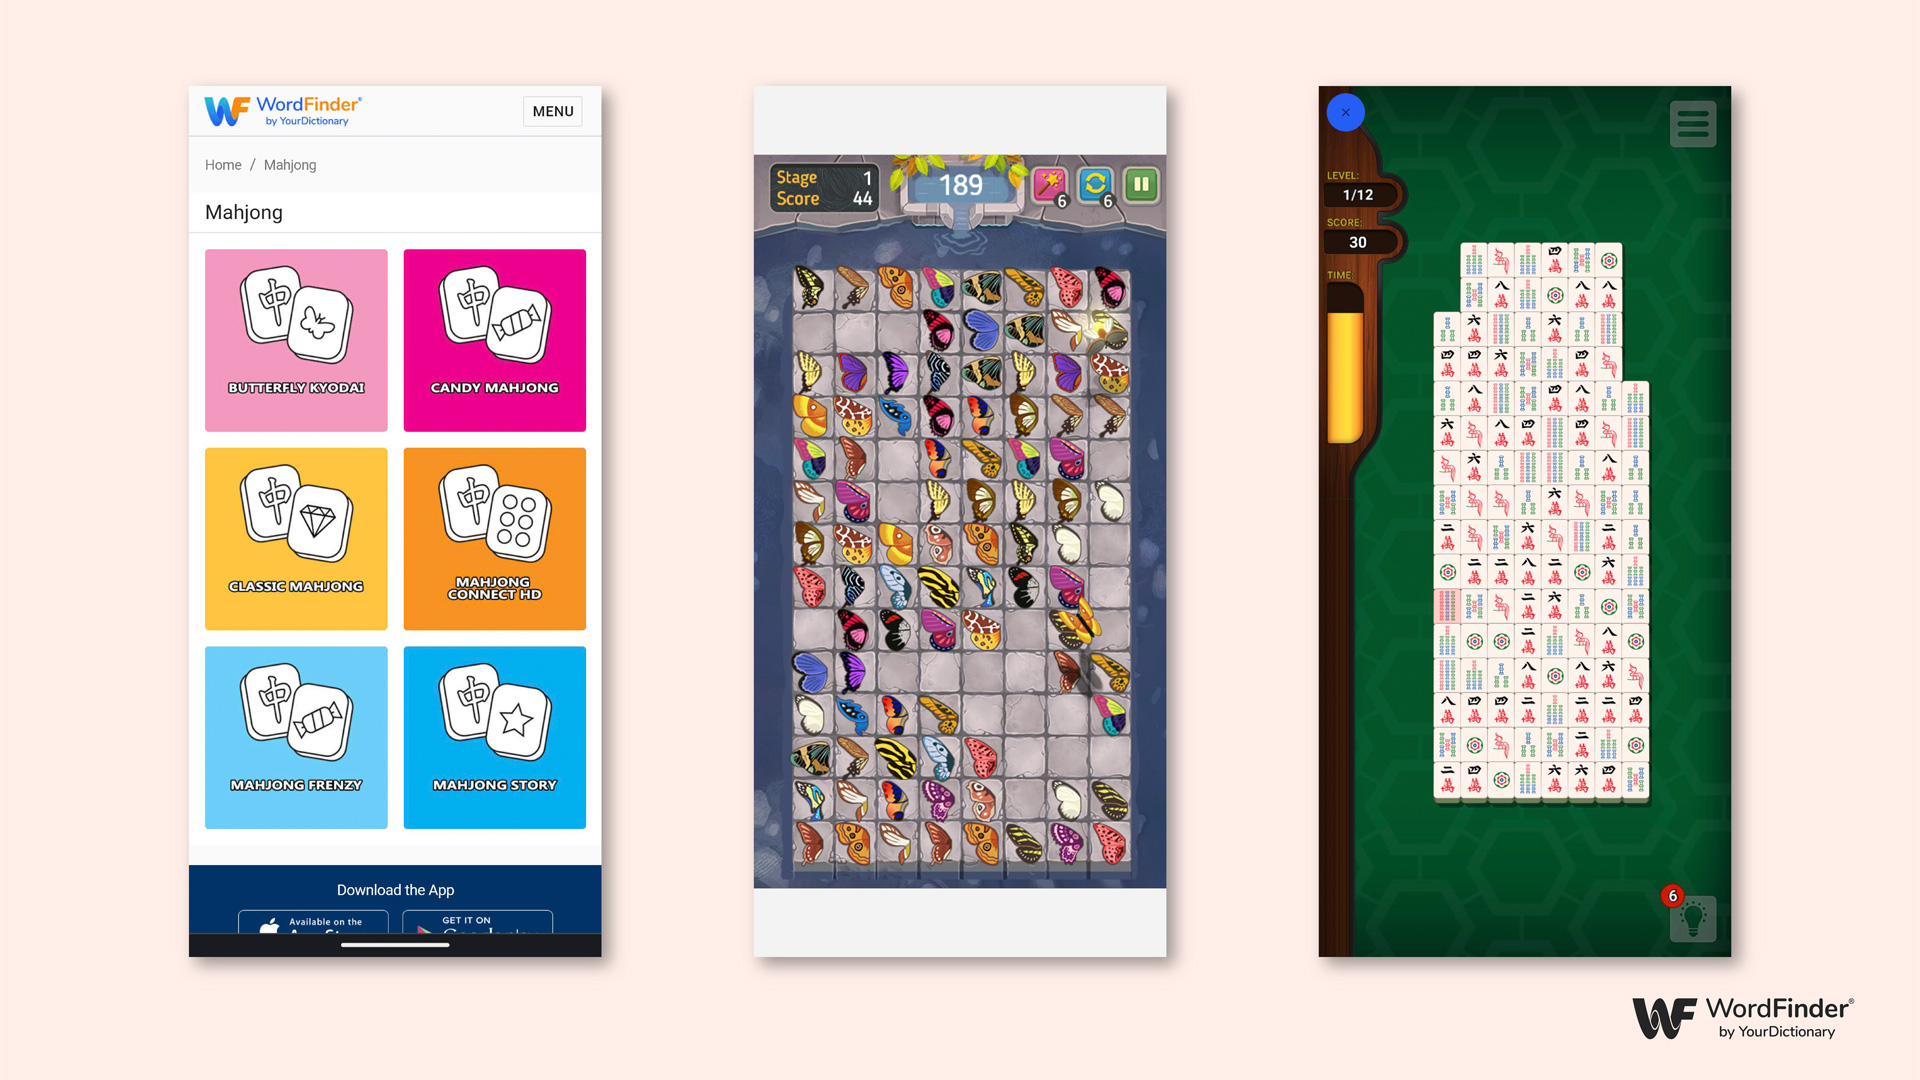 WordFinder Games: Mahjong